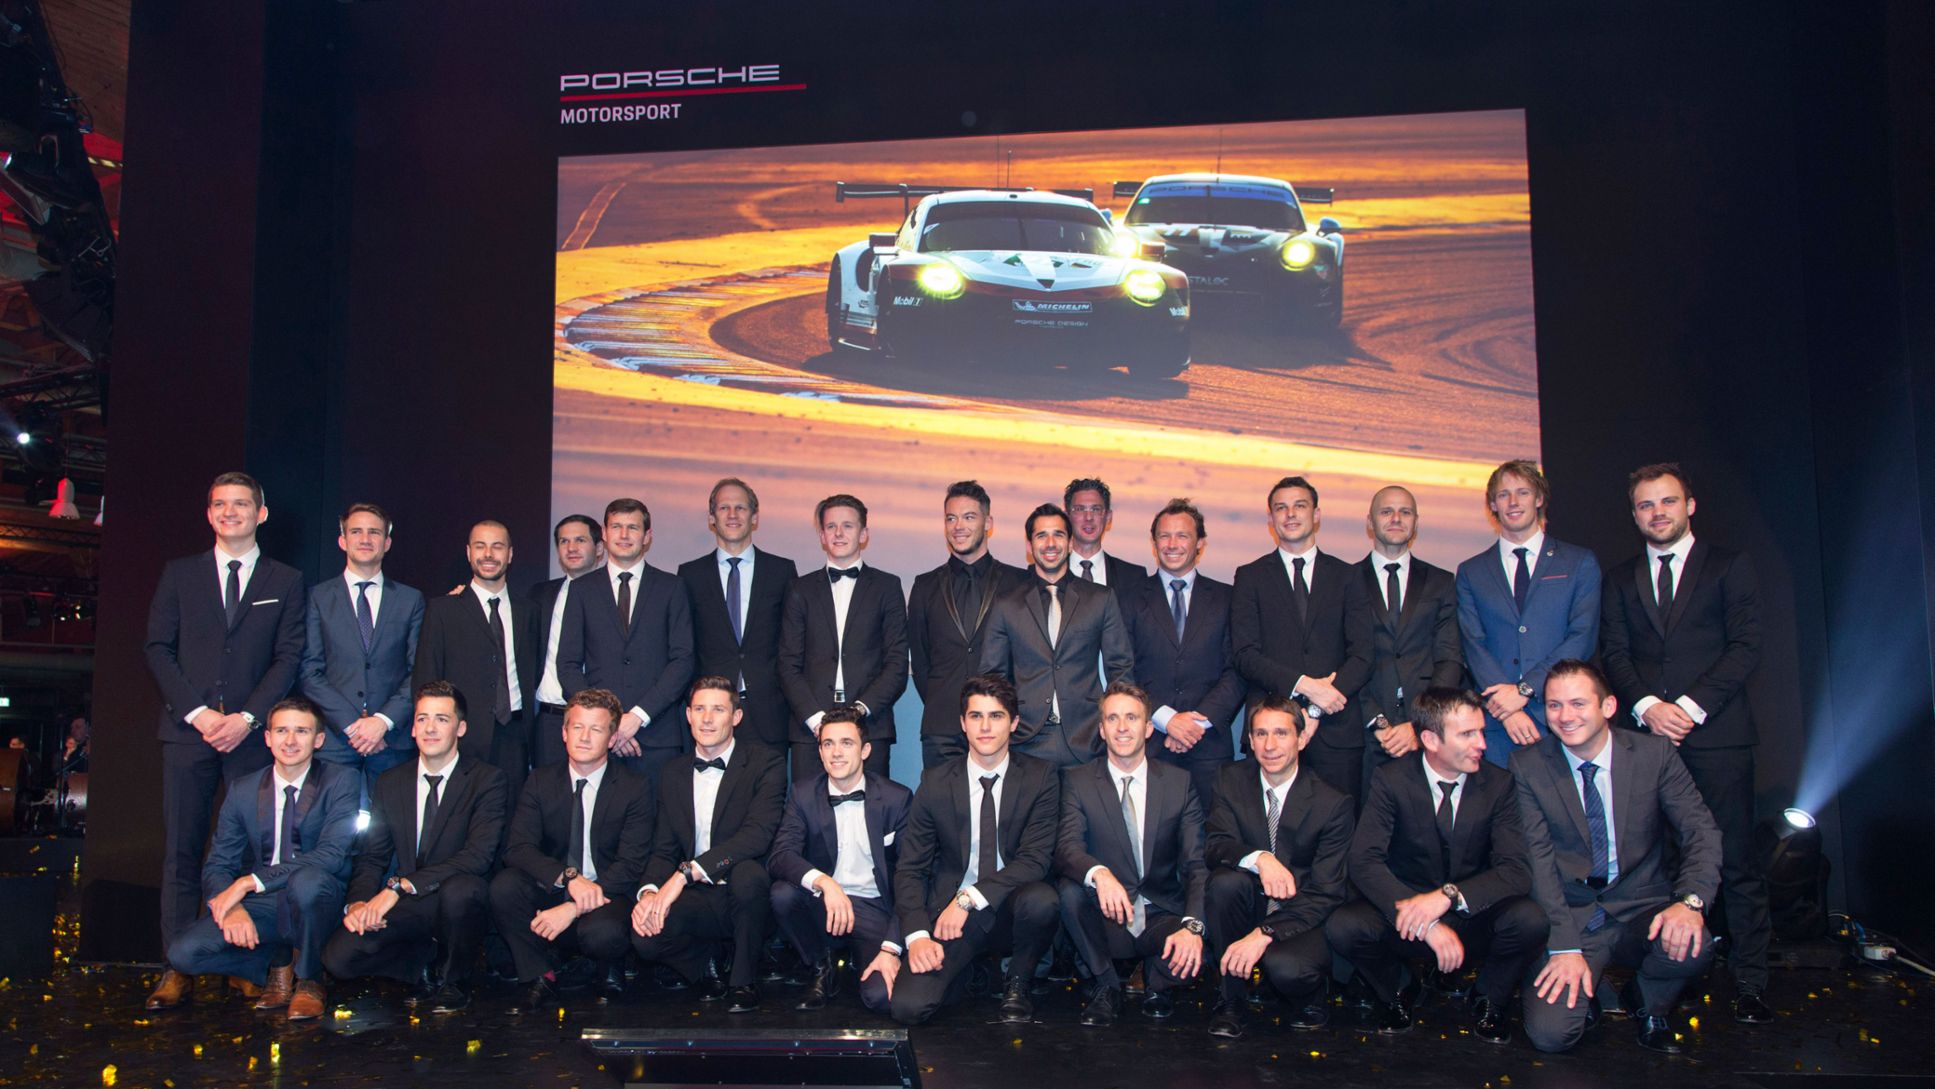 Porsche Night of Champions: Porsche-Fahreraufgebot 2018, Weissach, 09.12.2017, Porsche AG